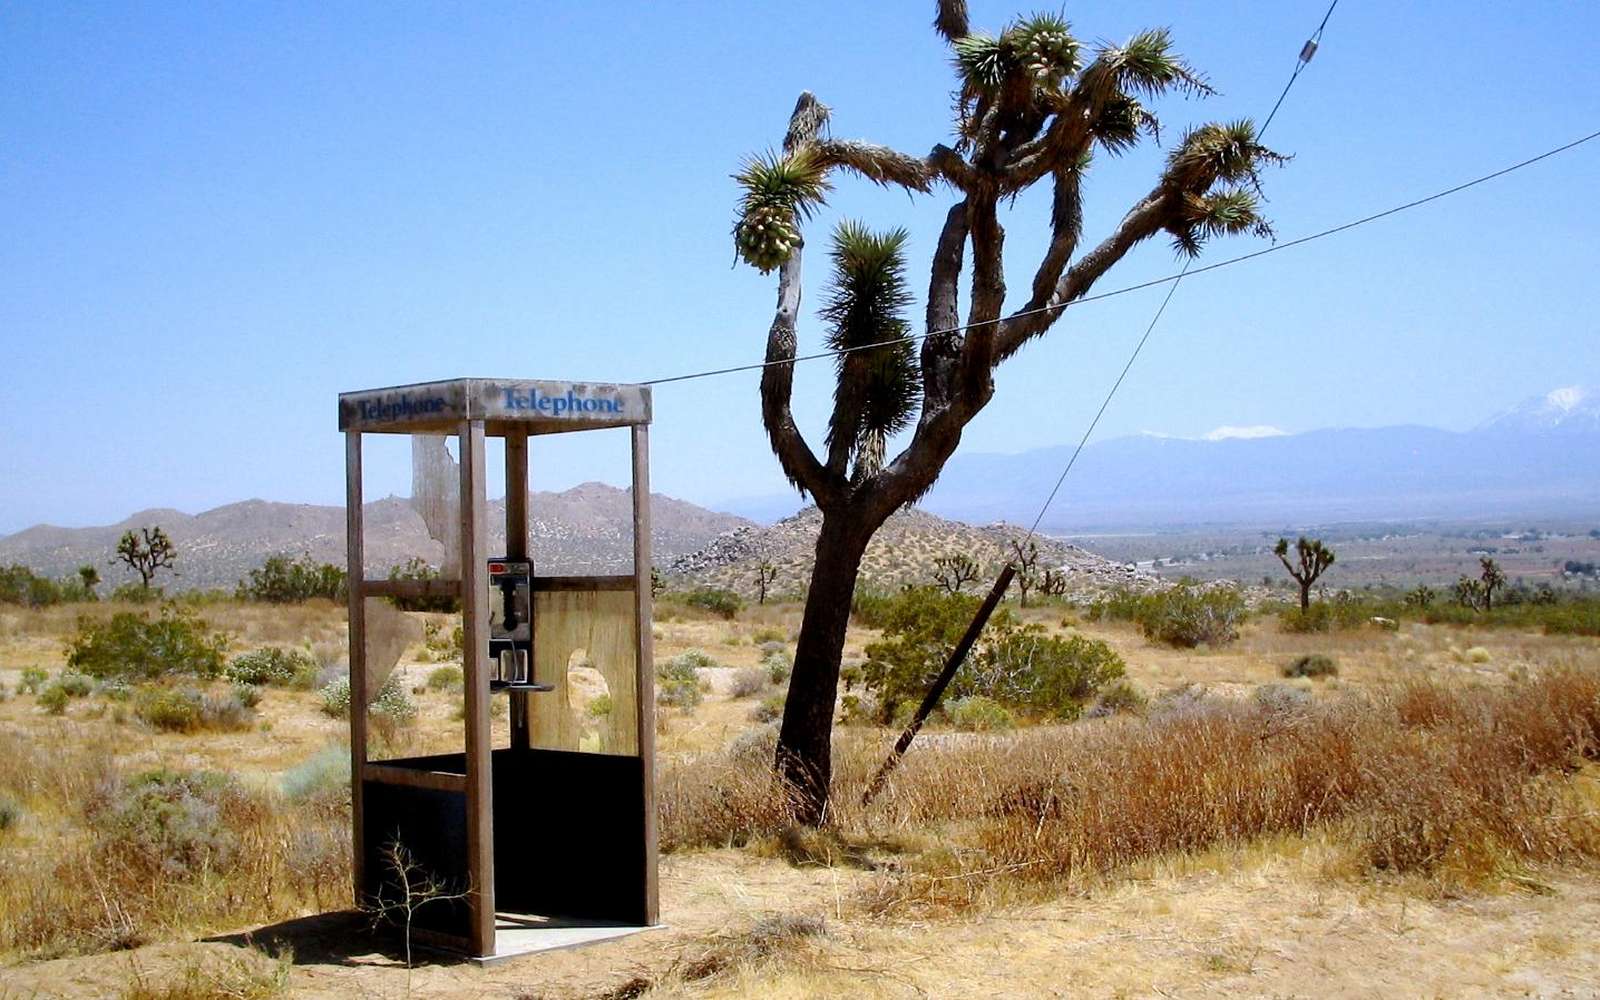 La « Mojave Phone Booth », une cabine téléphonique isolée dans le désert des Mojaves. © Mwf95, CC BY-SA 4.0, via Wikimedia Commons